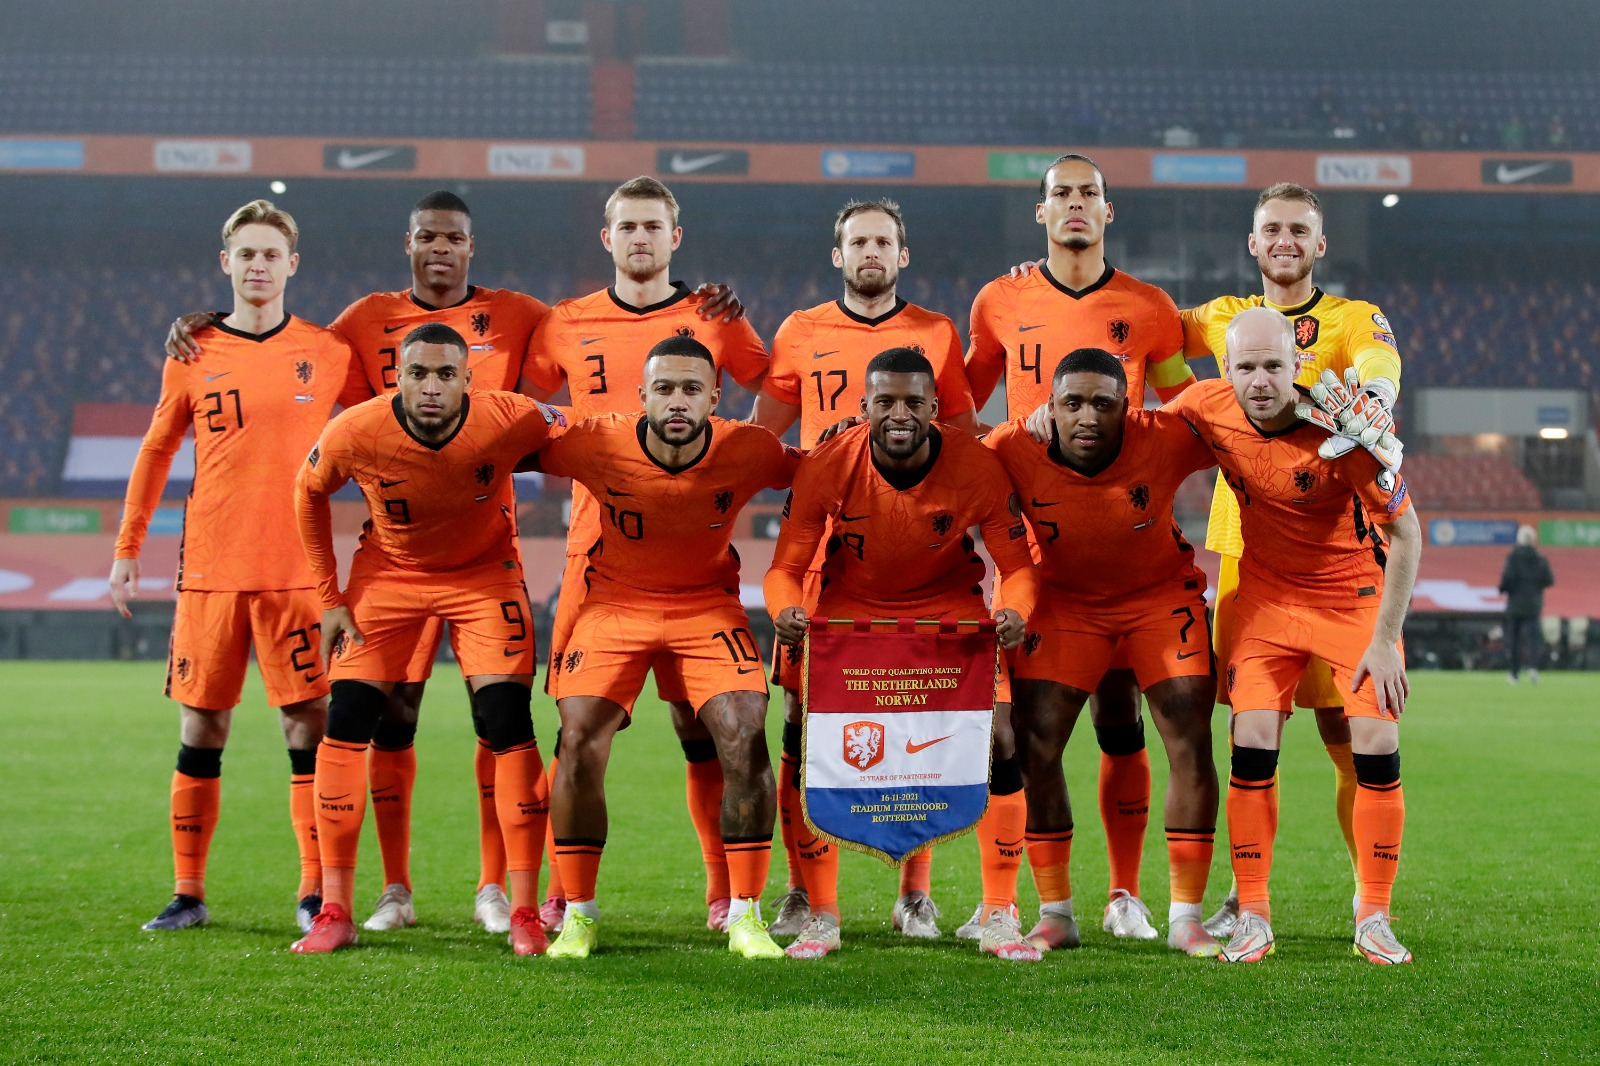 荷兰国家队,荷兰世界杯,橙衣军团,球迷,俱乐部